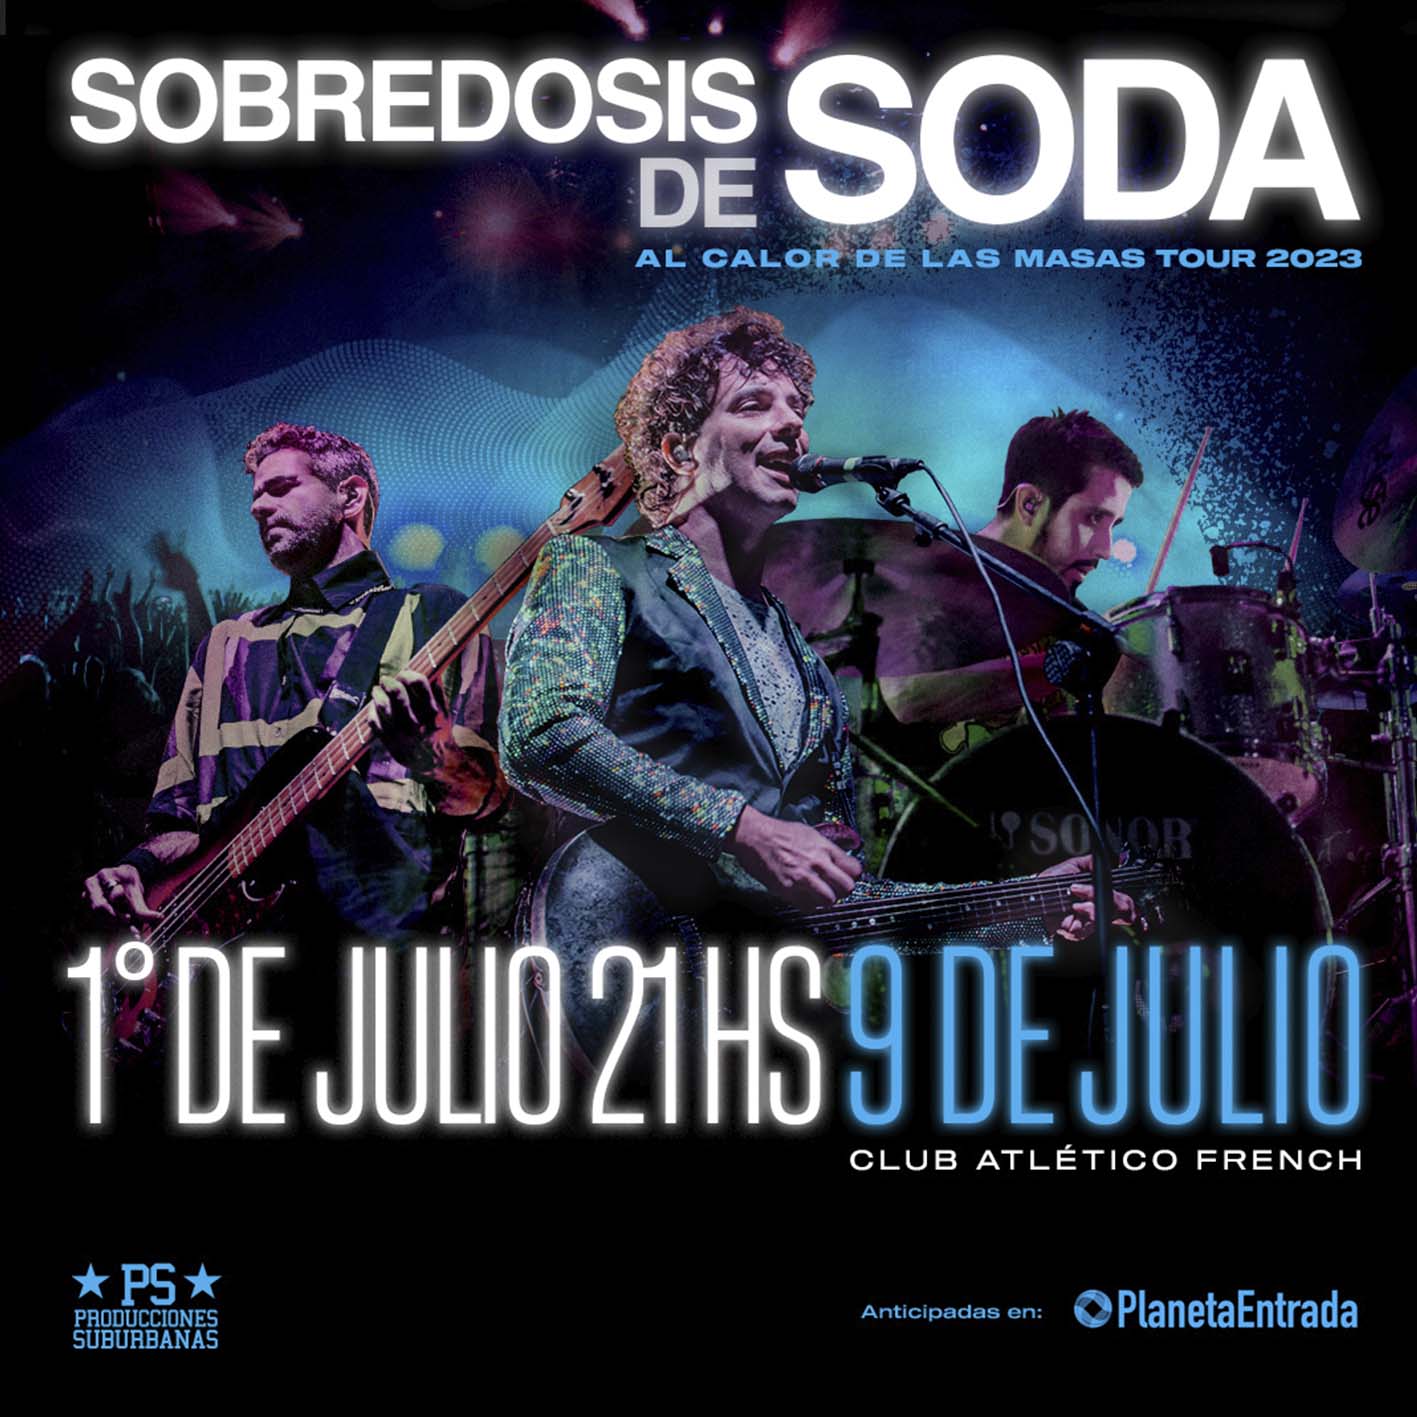 SOBREDOSIS DE SODA | 01 JULIO | 9 DE JULIO